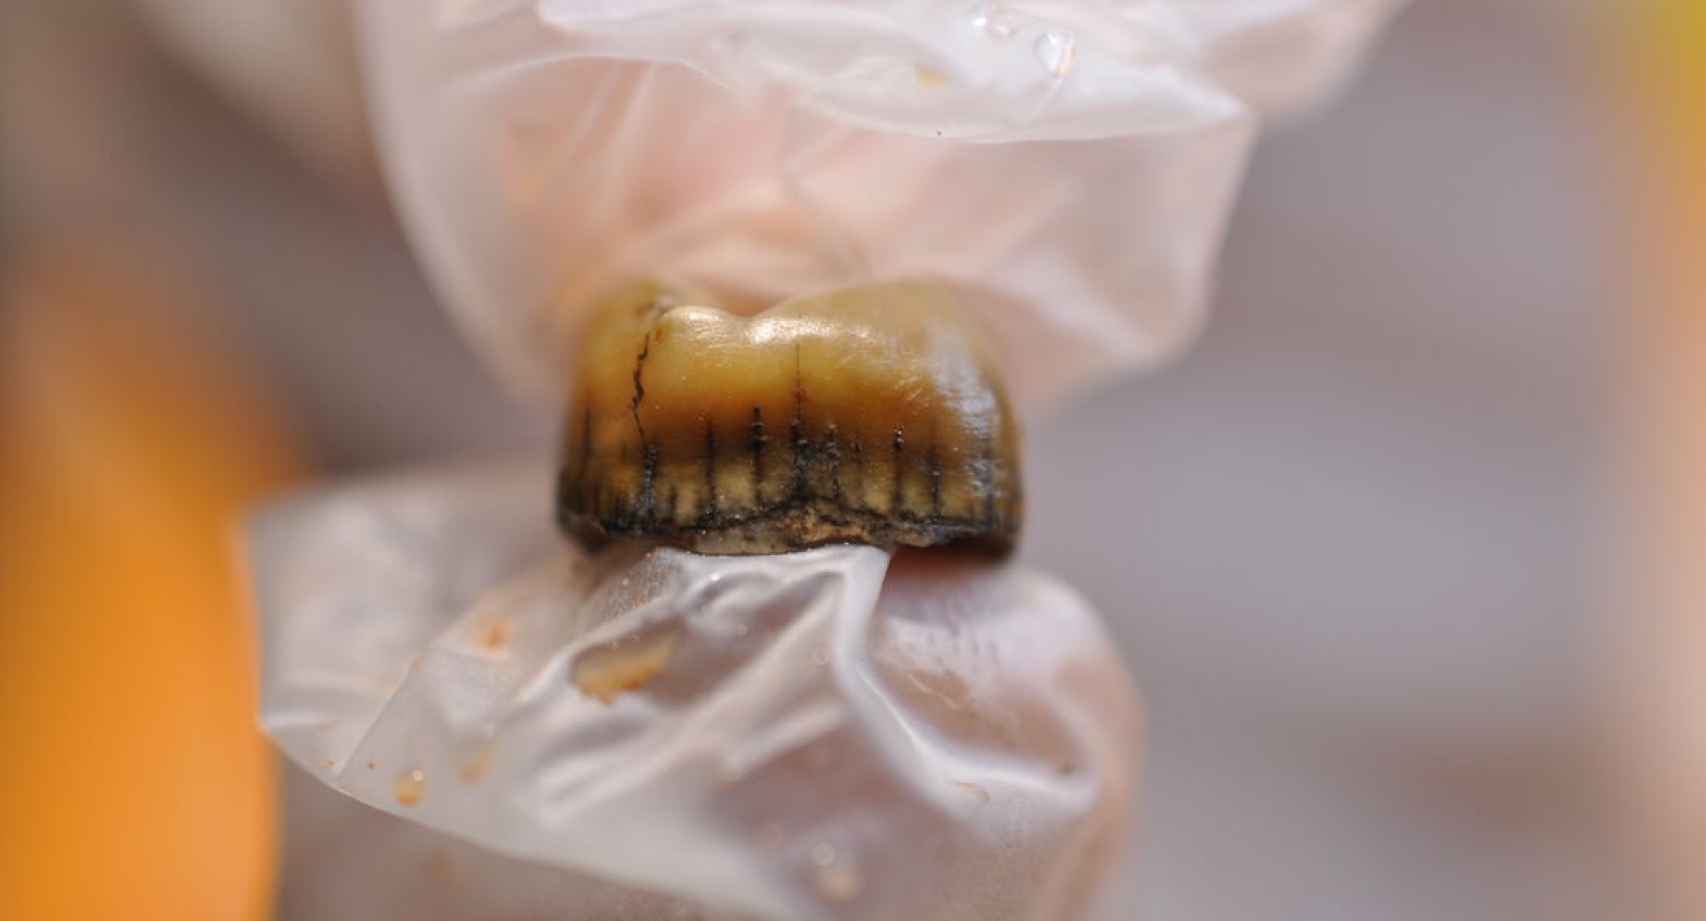 Detalle del diente neandertal recuperado en Cova Simanya.